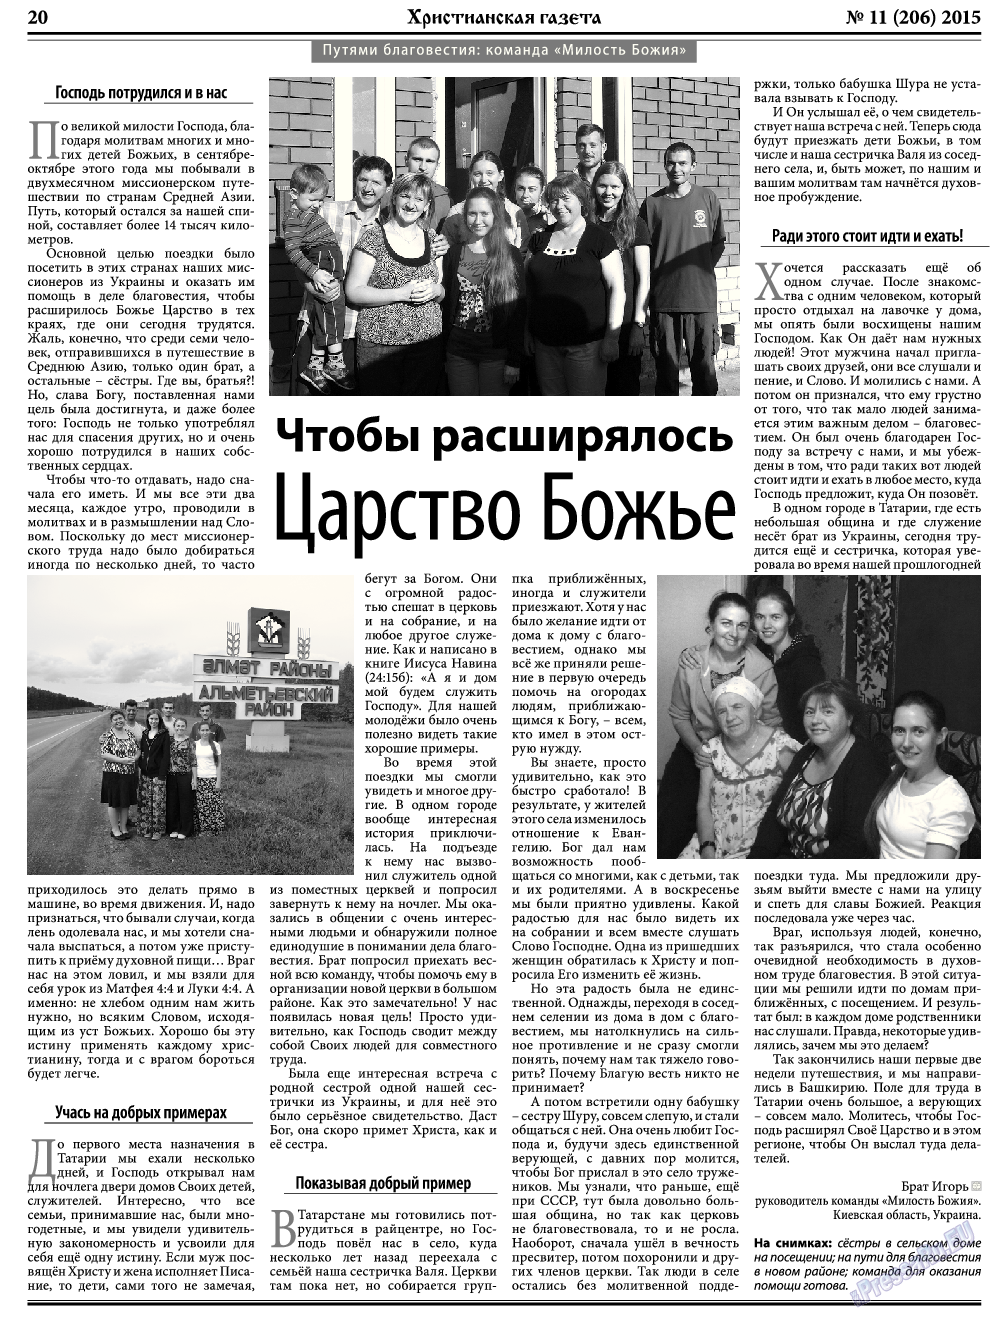 Христианская газета, газета. 2015 №11 стр.28